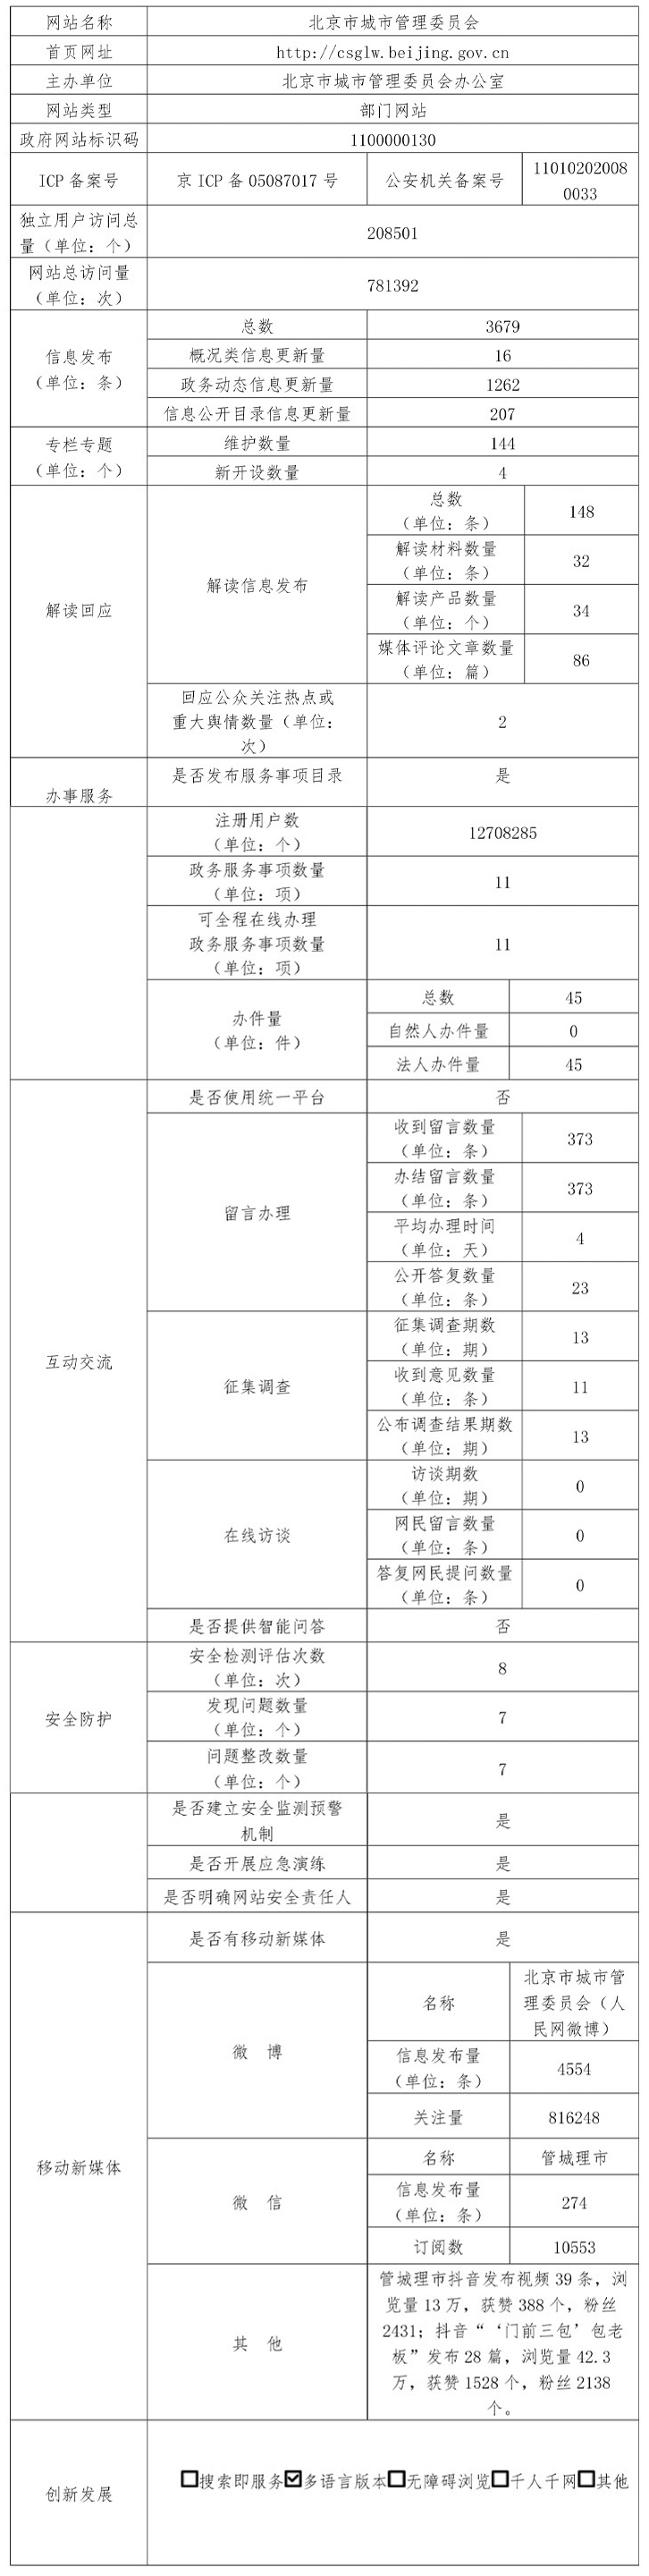 北京市城市管理委员2019年政府网站年度工作报表